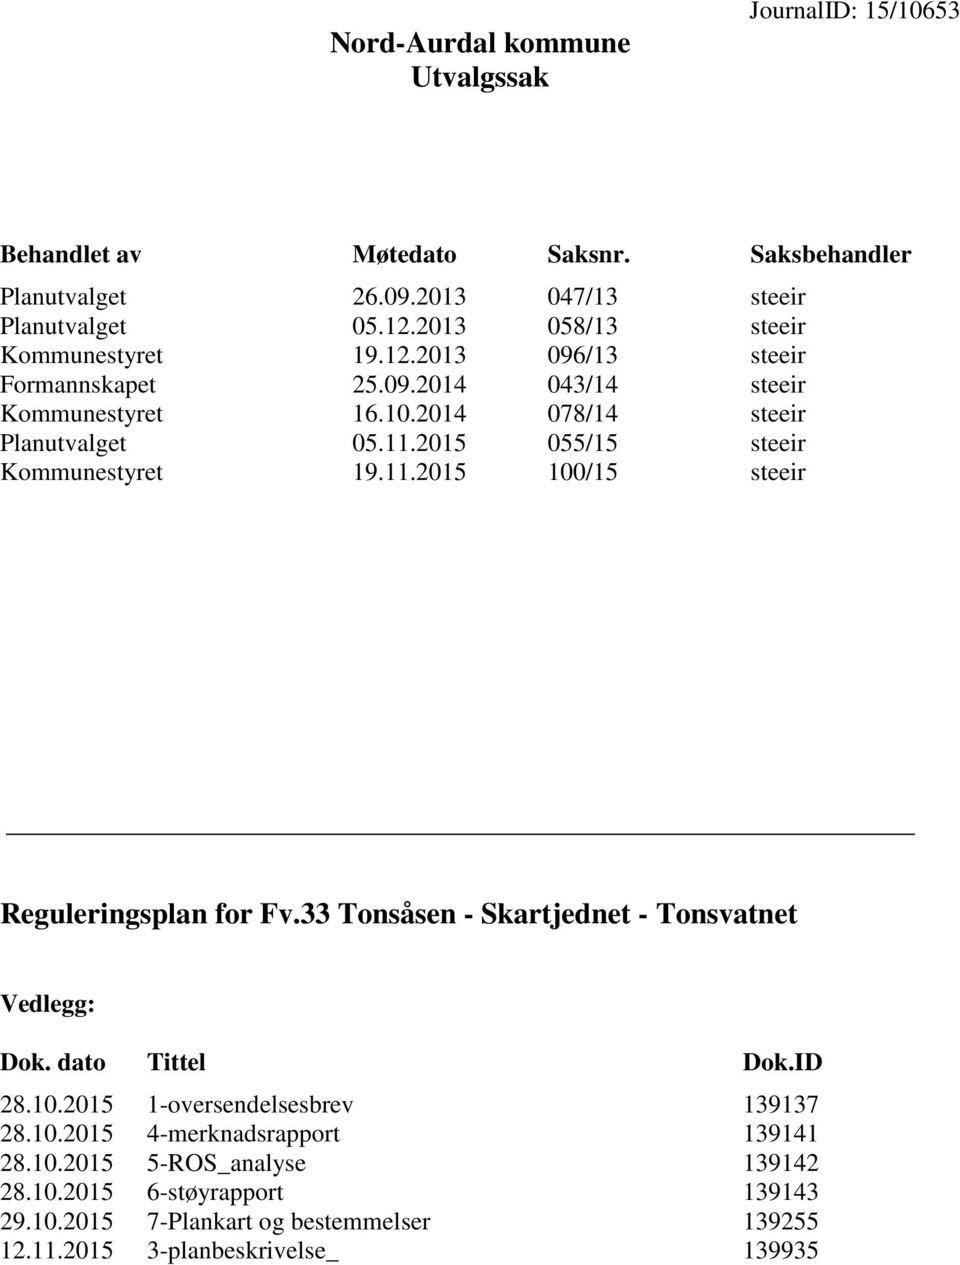 2015 055/15 steeir Kommunestyret 19.11.2015 100/15 steeir Reguleringsplan for Fv.33 Tonsåsen - Skartjednet - Tonsvatnet Vedlegg: Dok. dato Tittel Dok.ID 28.10.2015 1-oversendelsesbrev 139137 28.